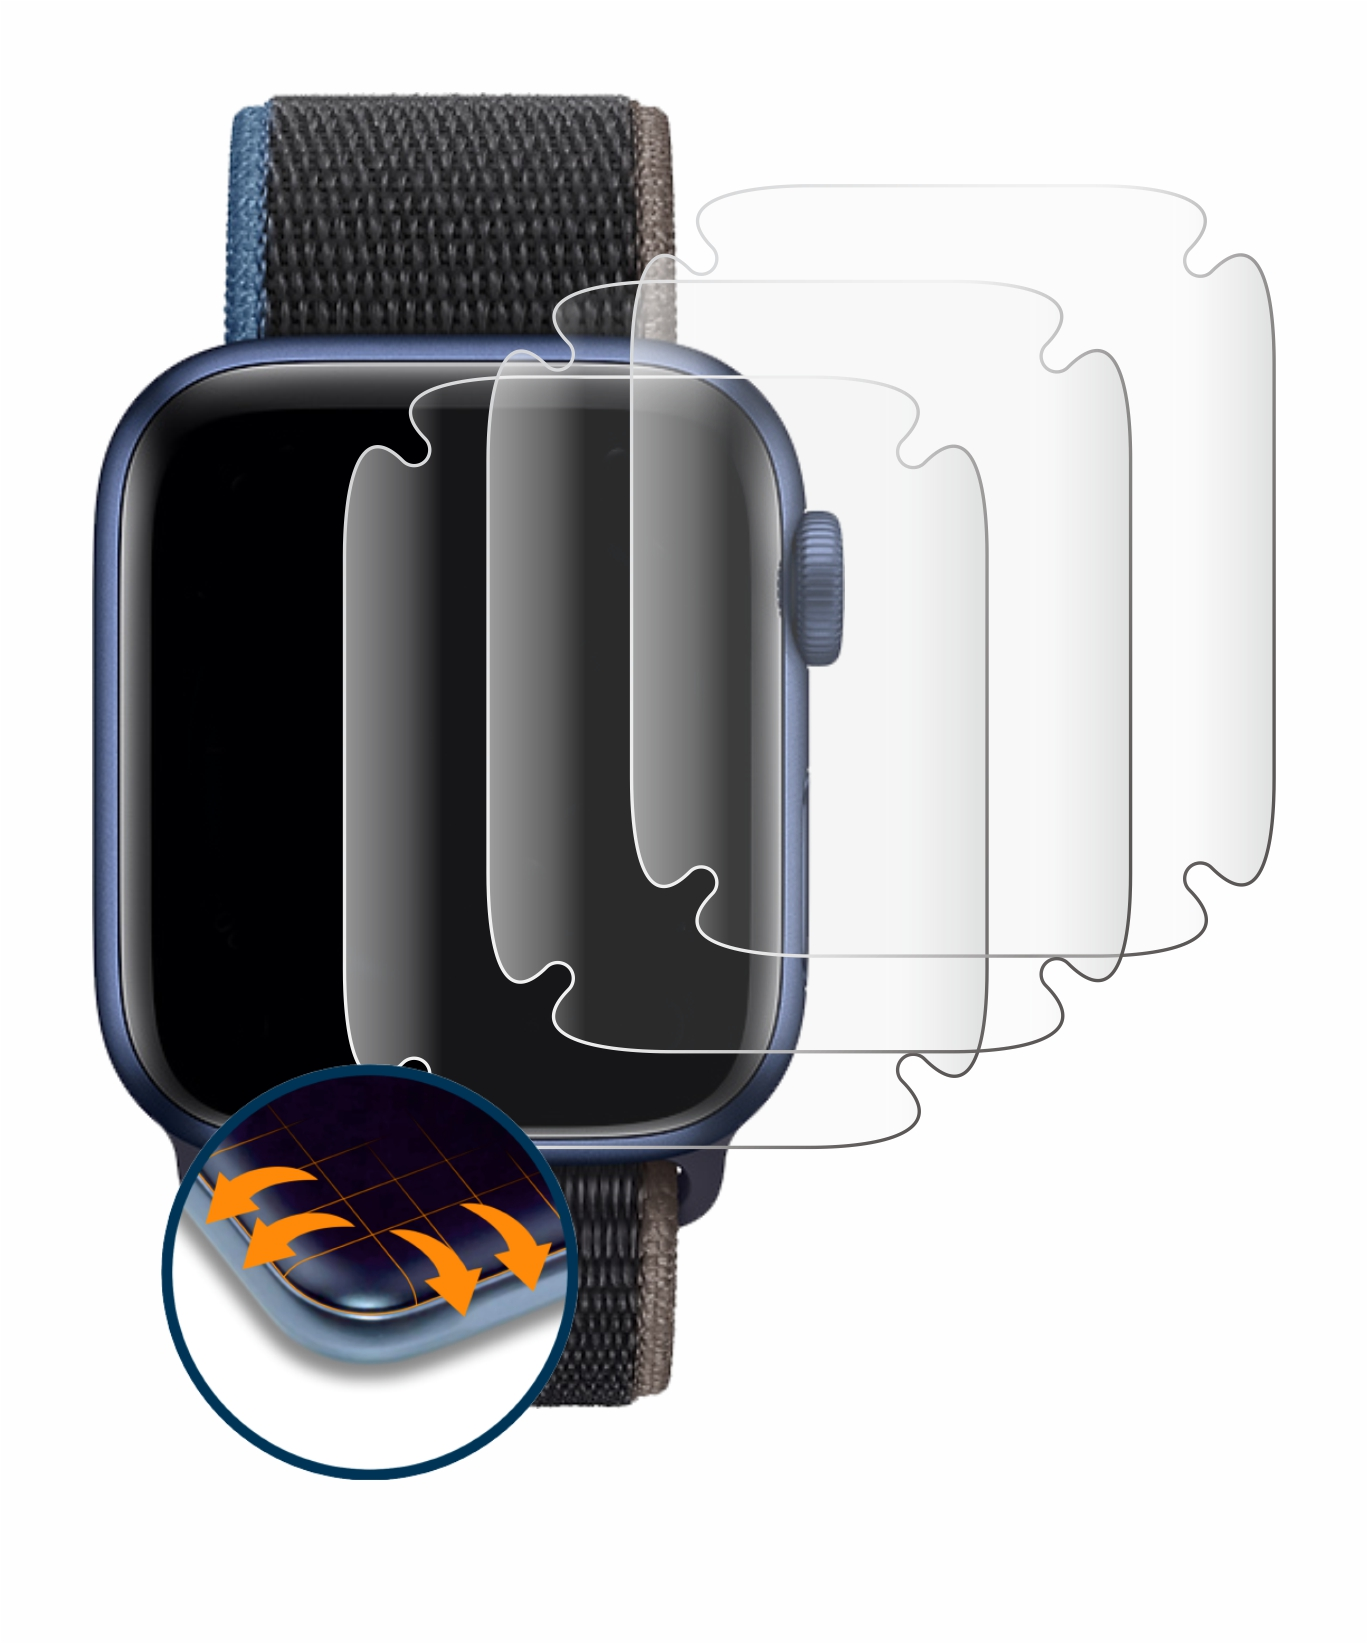 SAVVIES Full-Cover 3D Series Watch Apple (44 Schutzfolie(für 6 Flex mm)) 4x Curved